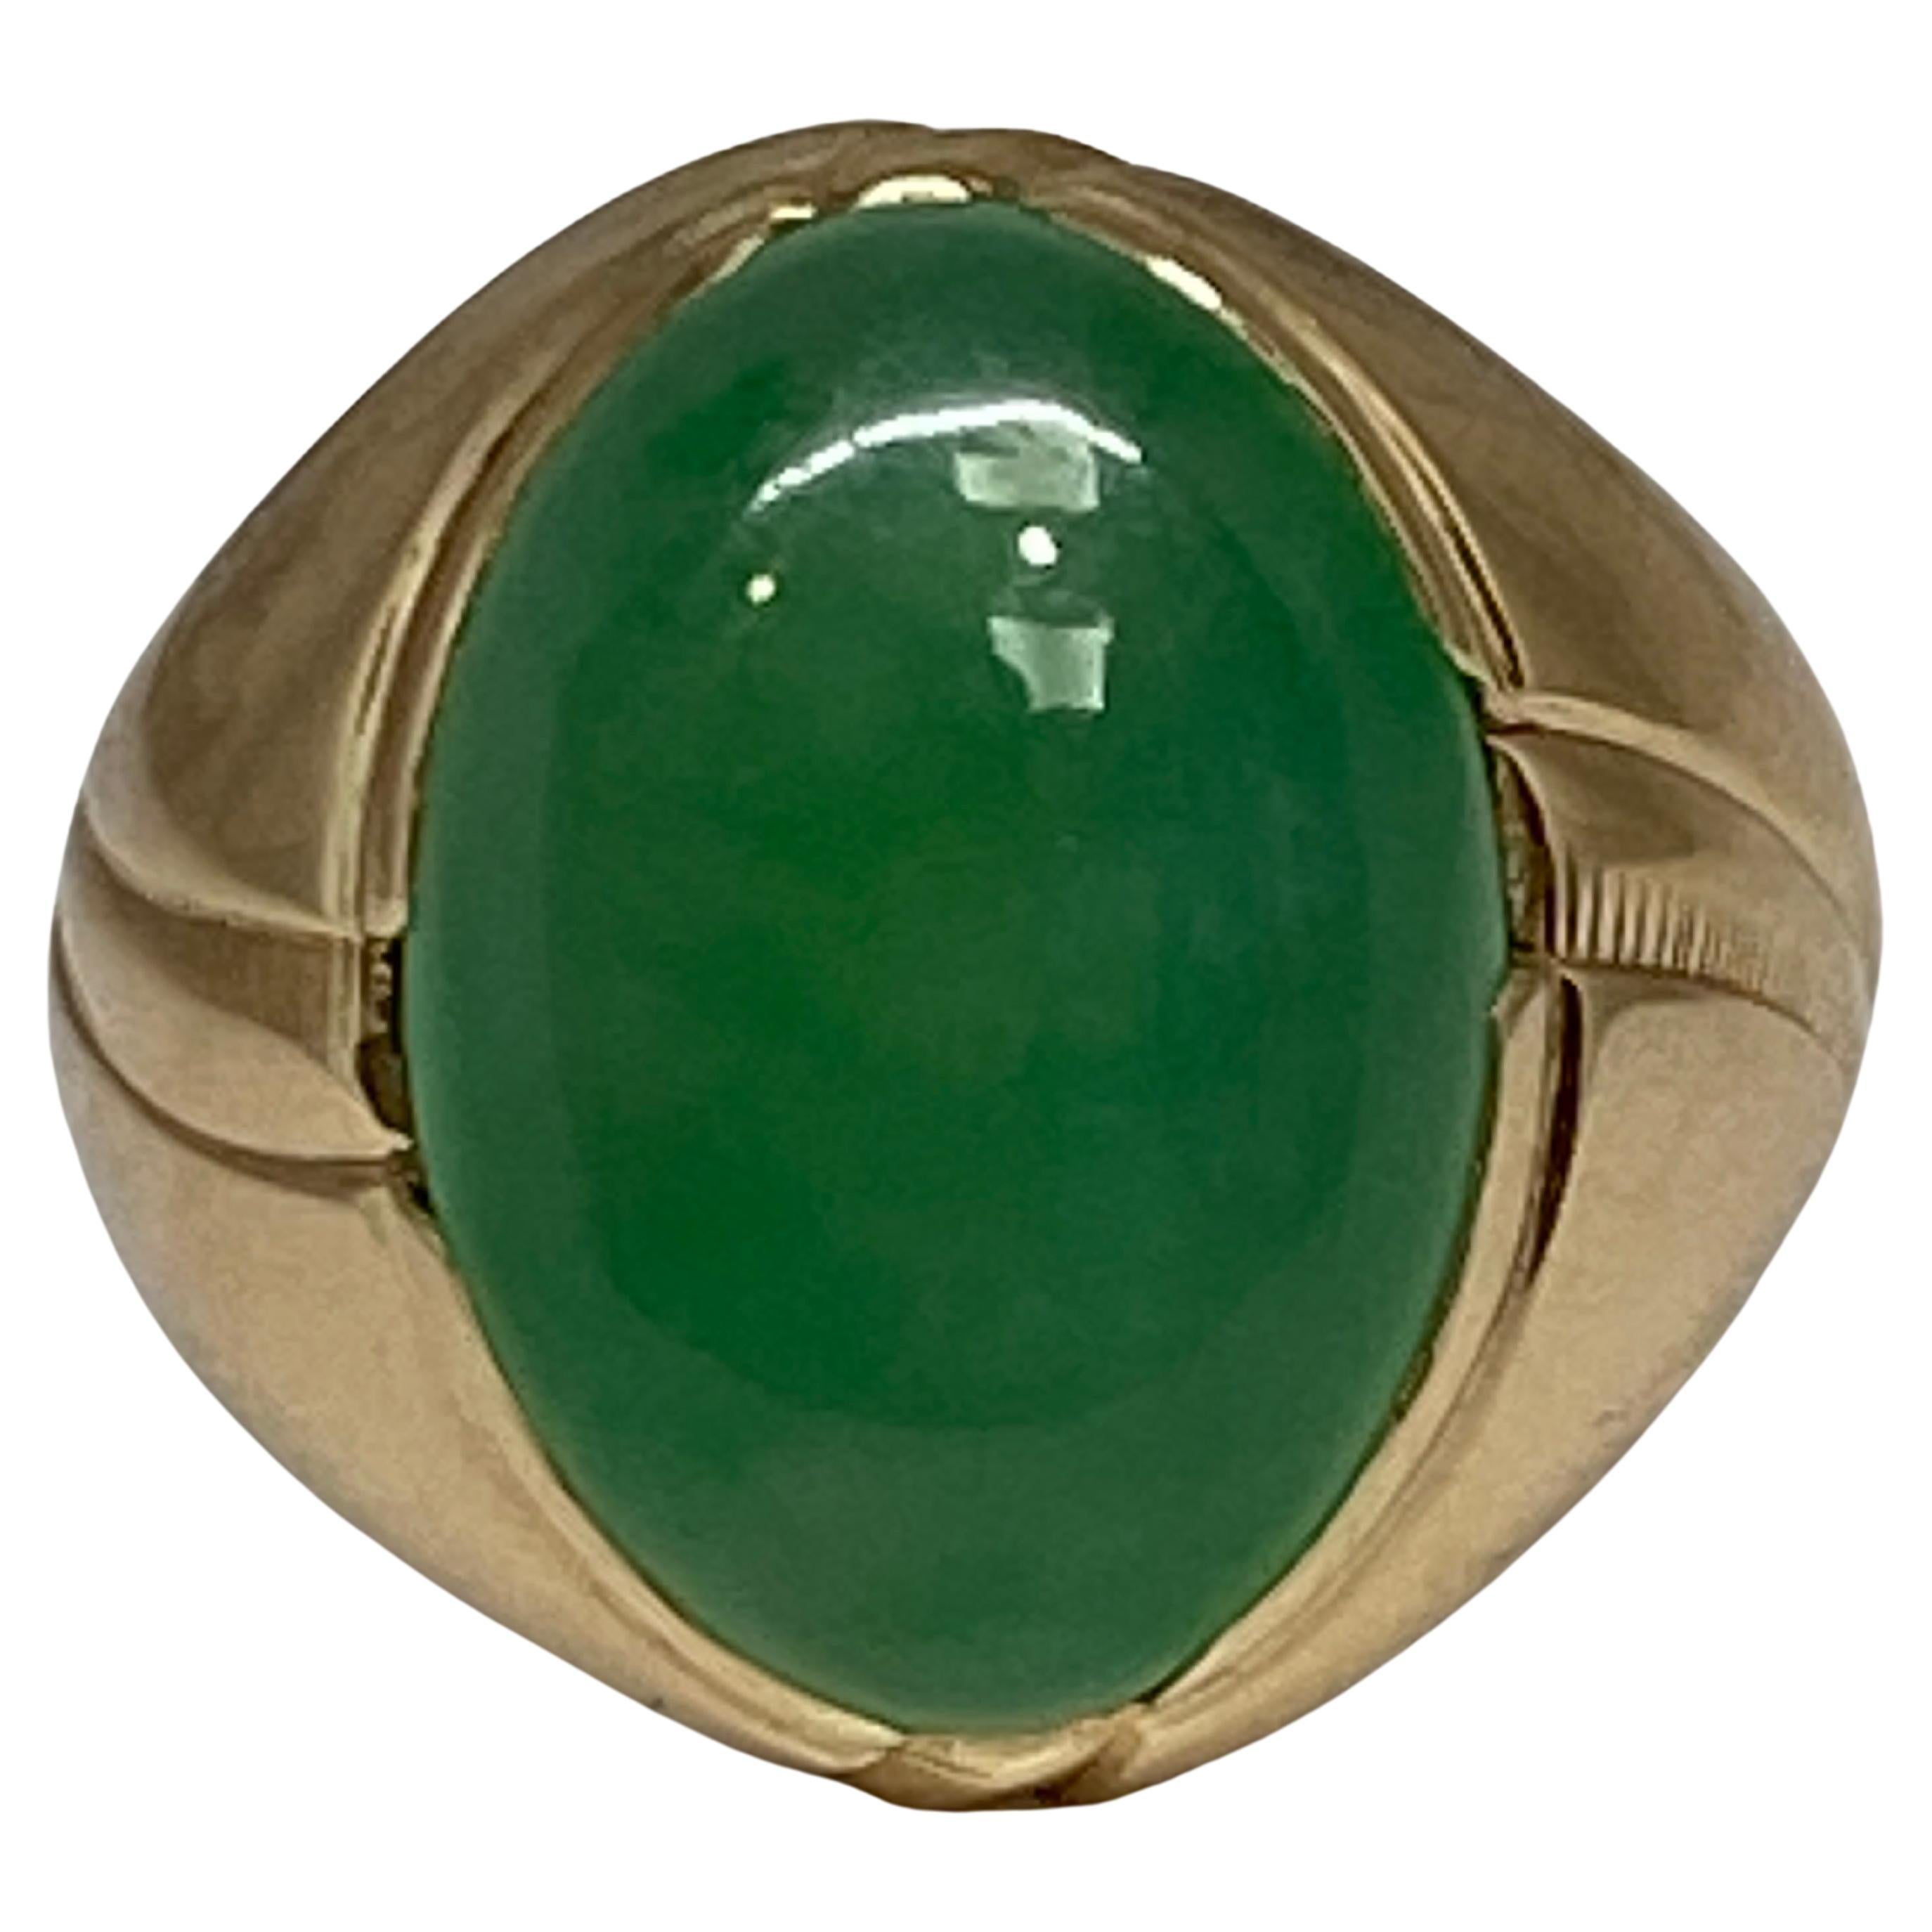 Dieser kühne und substanzielle Ring der Retro-Ära präsentiert in der Mitte einen prächtigen Cabochon aus grüner Jade. 

Glatt und glänzend zeigt der große Cabochon seine leuchtend grüne Farbe senkrecht auf einer glänzenden Fassung aus 14-karätigem